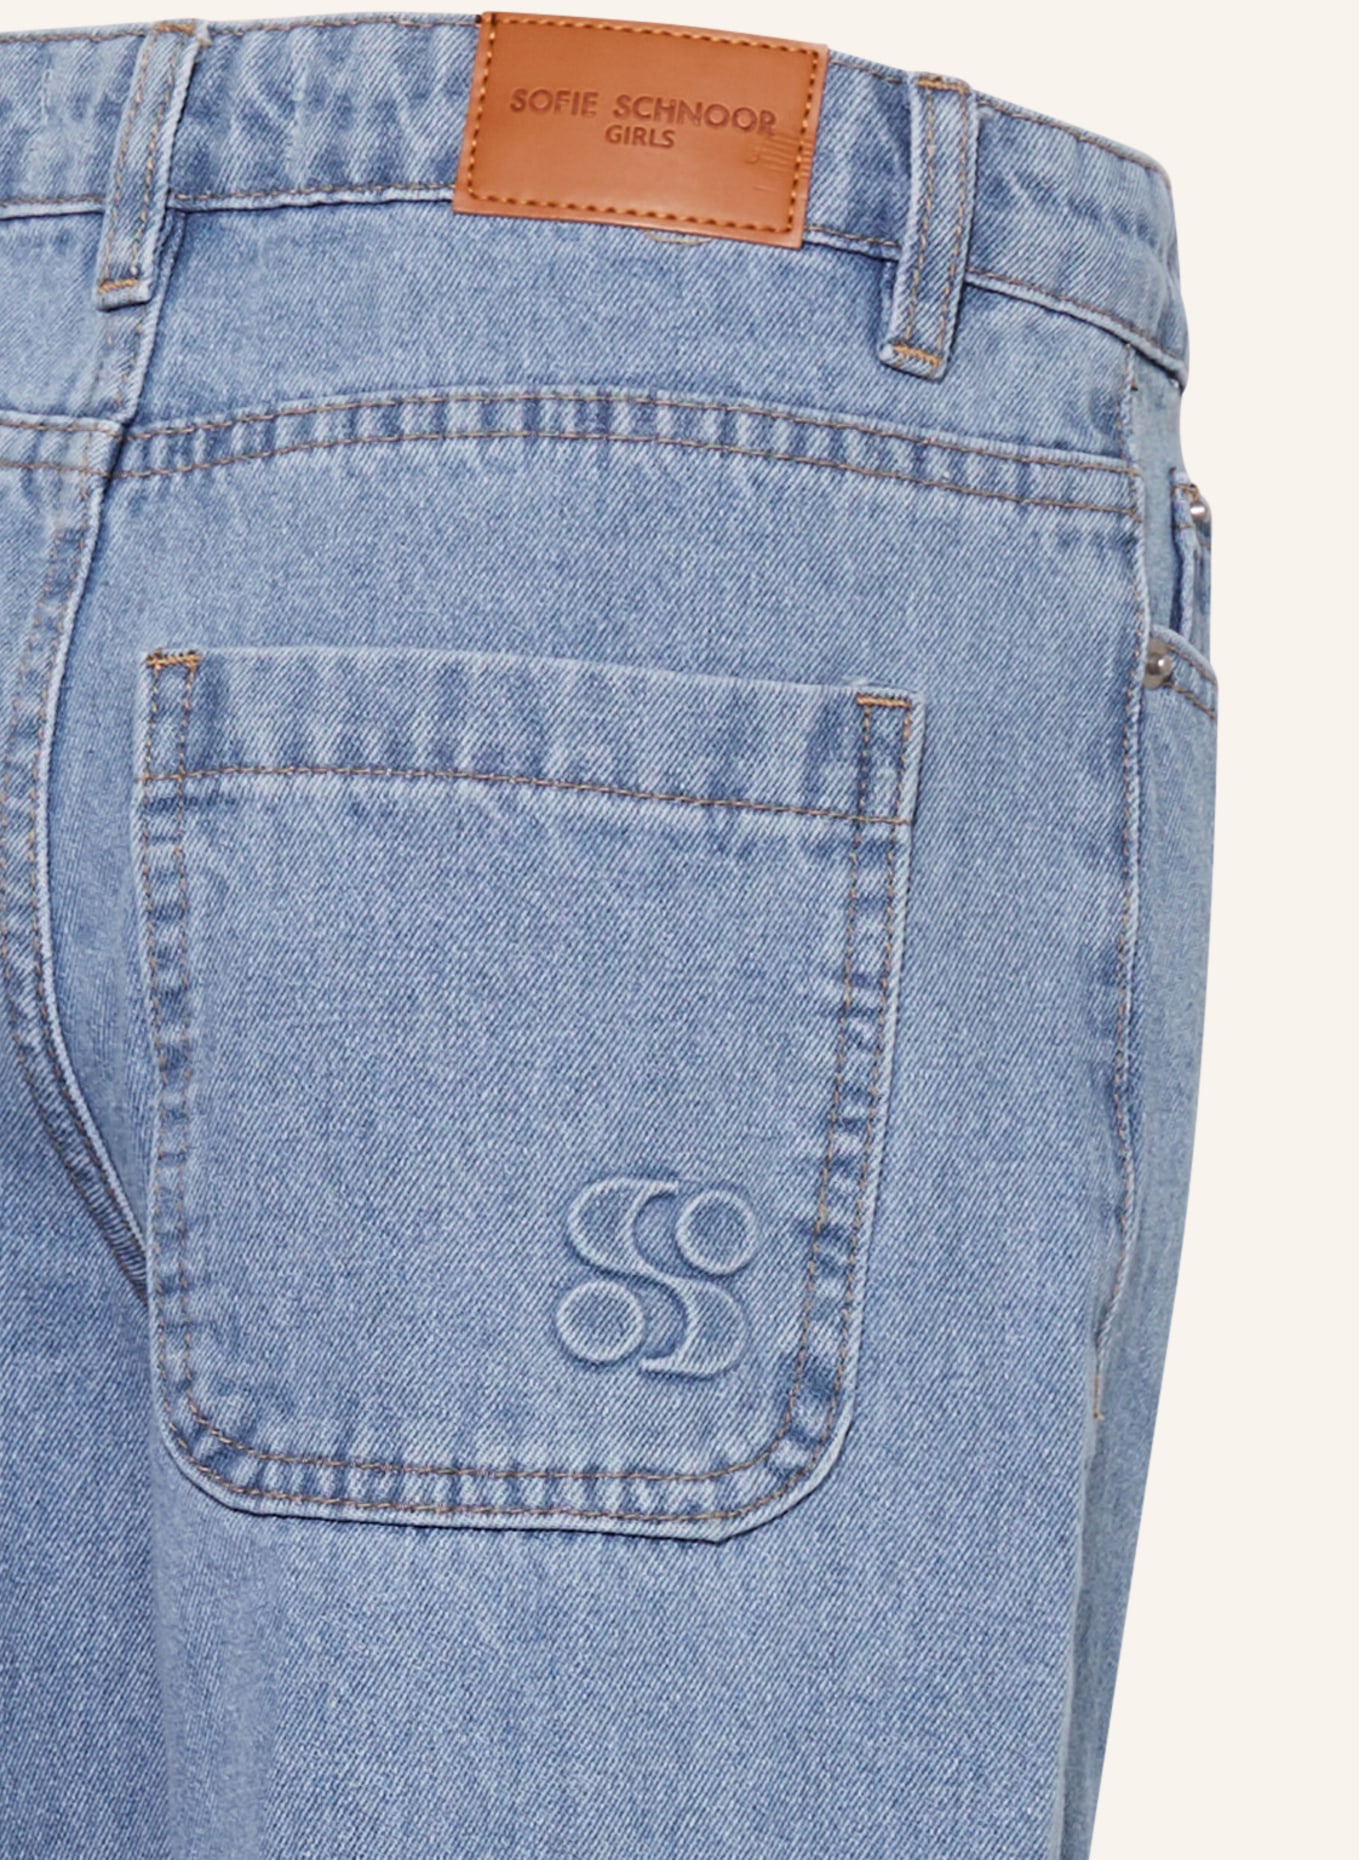 SOFIE SCHNOOR Jeans-Culotte IZA, Farbe: 5063 Light Blue (Bild 3)